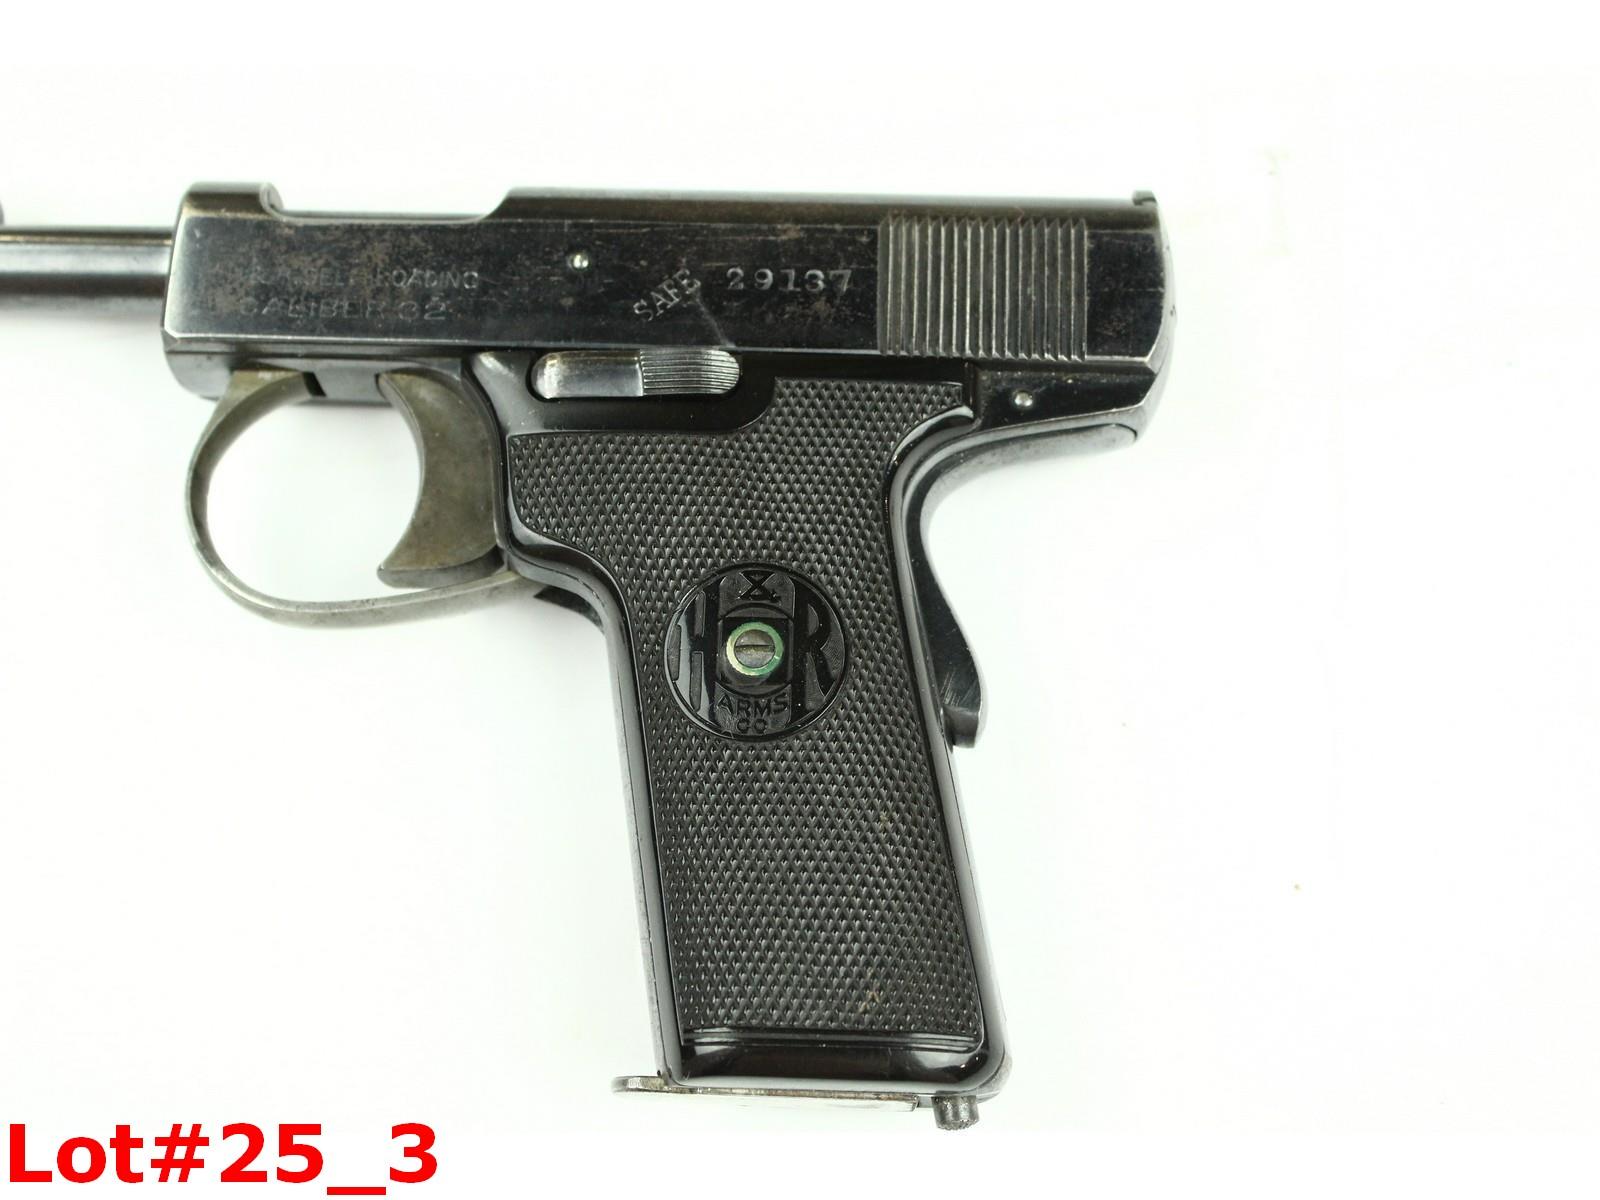 H&R Model 1907 Self Loading 32 Caliber Pistol